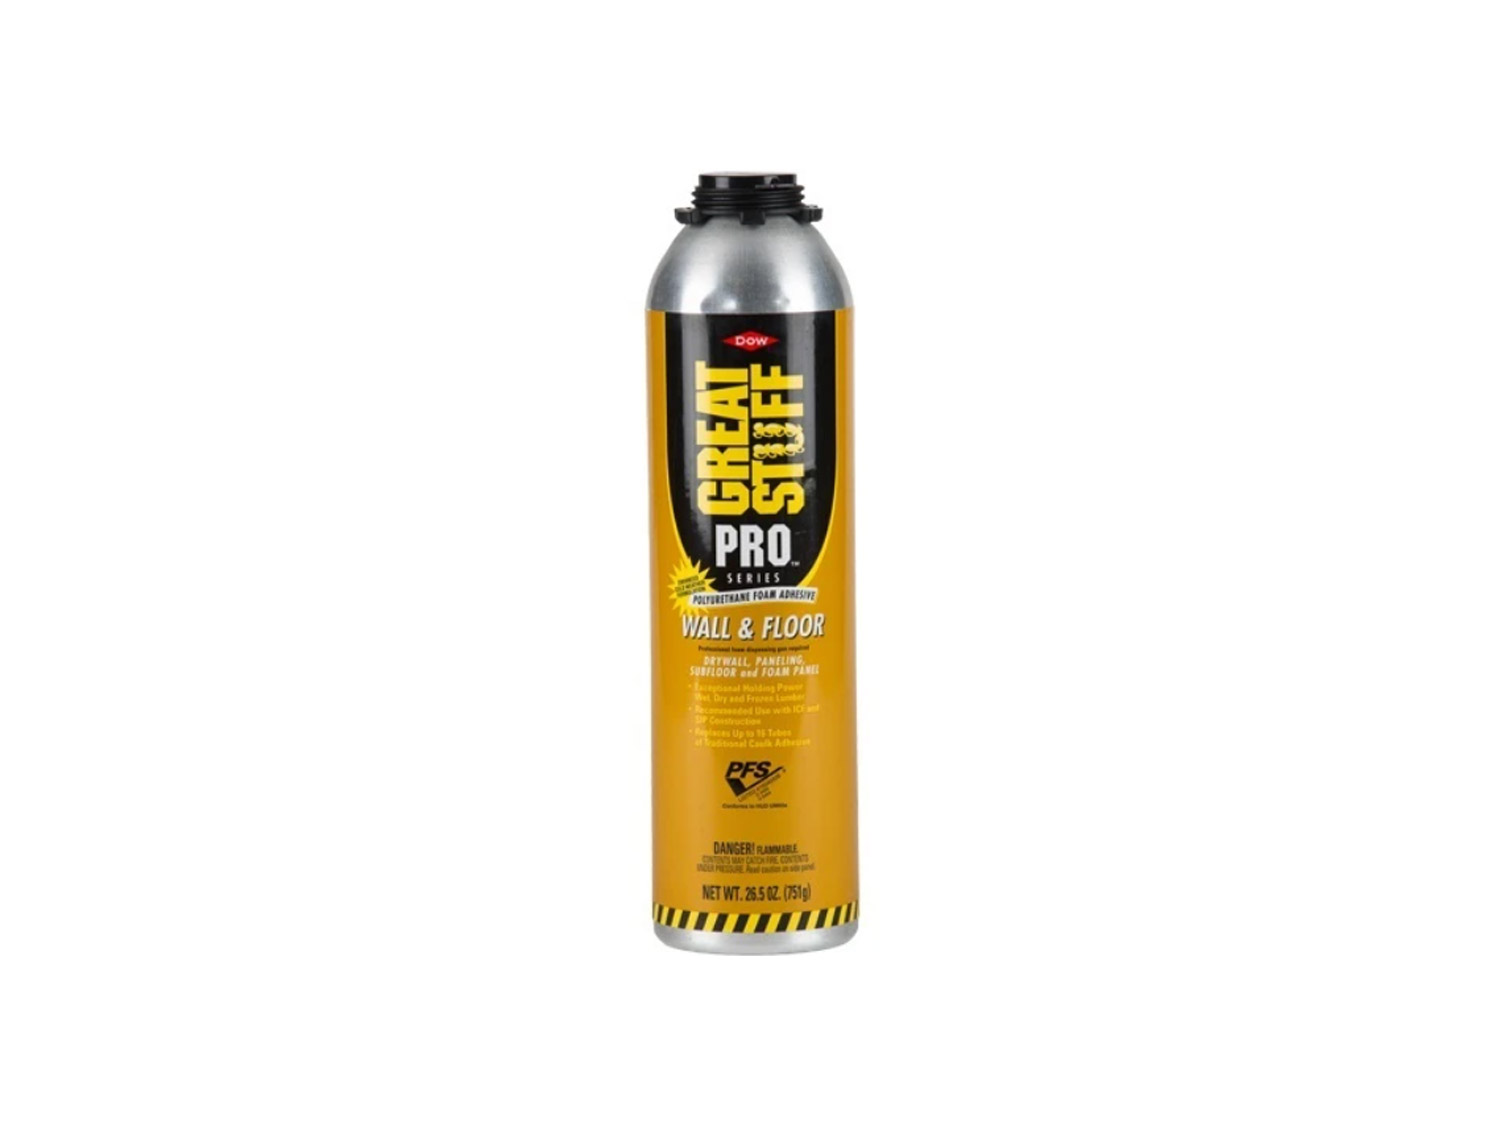 Pro Foam & Fabric Spray Glue 10oz